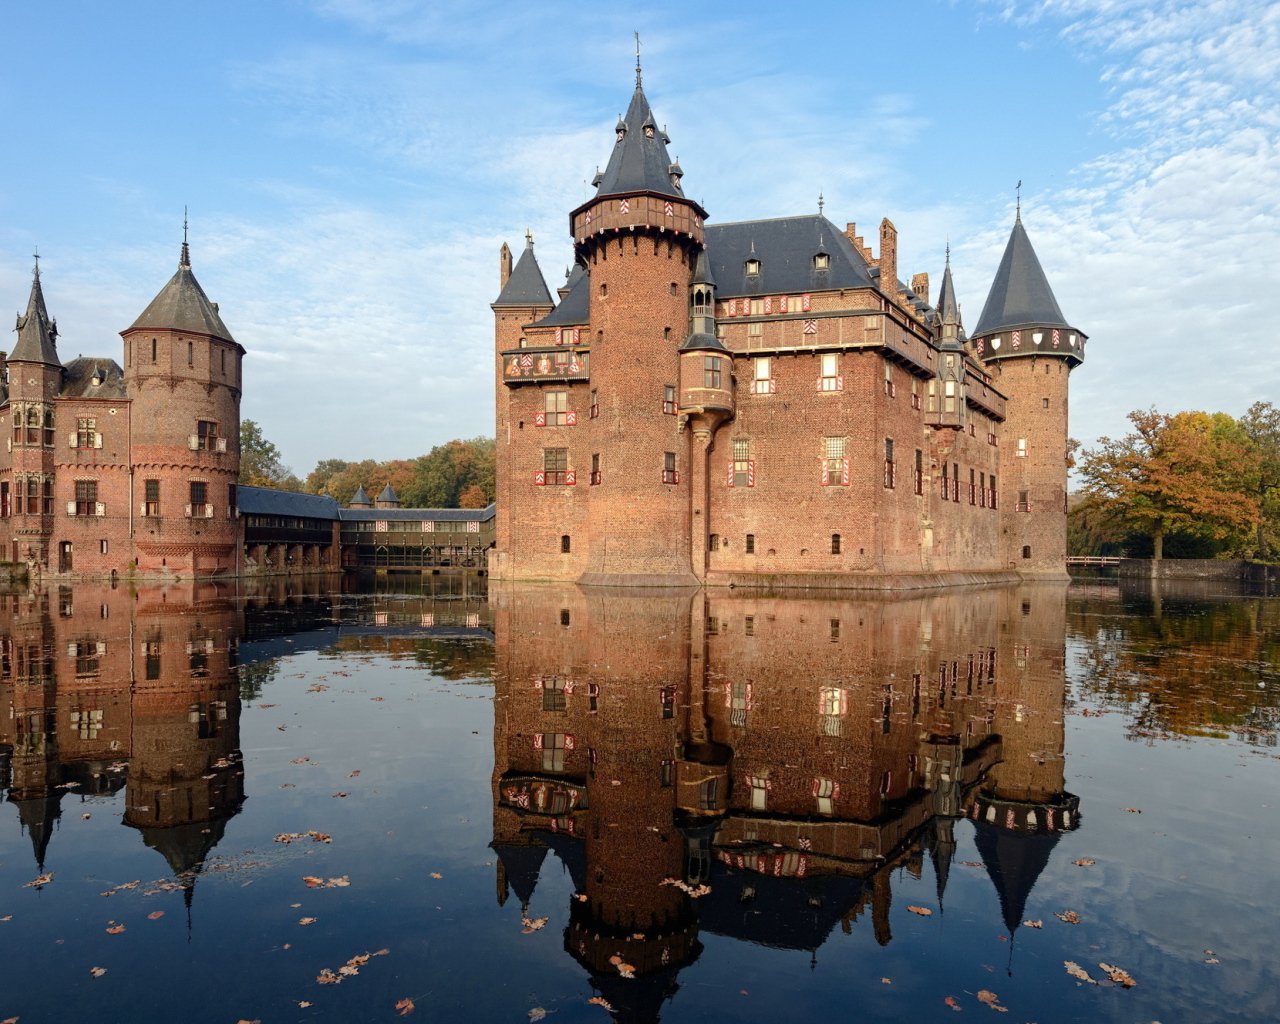 Замок Де Хаар на  воде, Нидерланды 